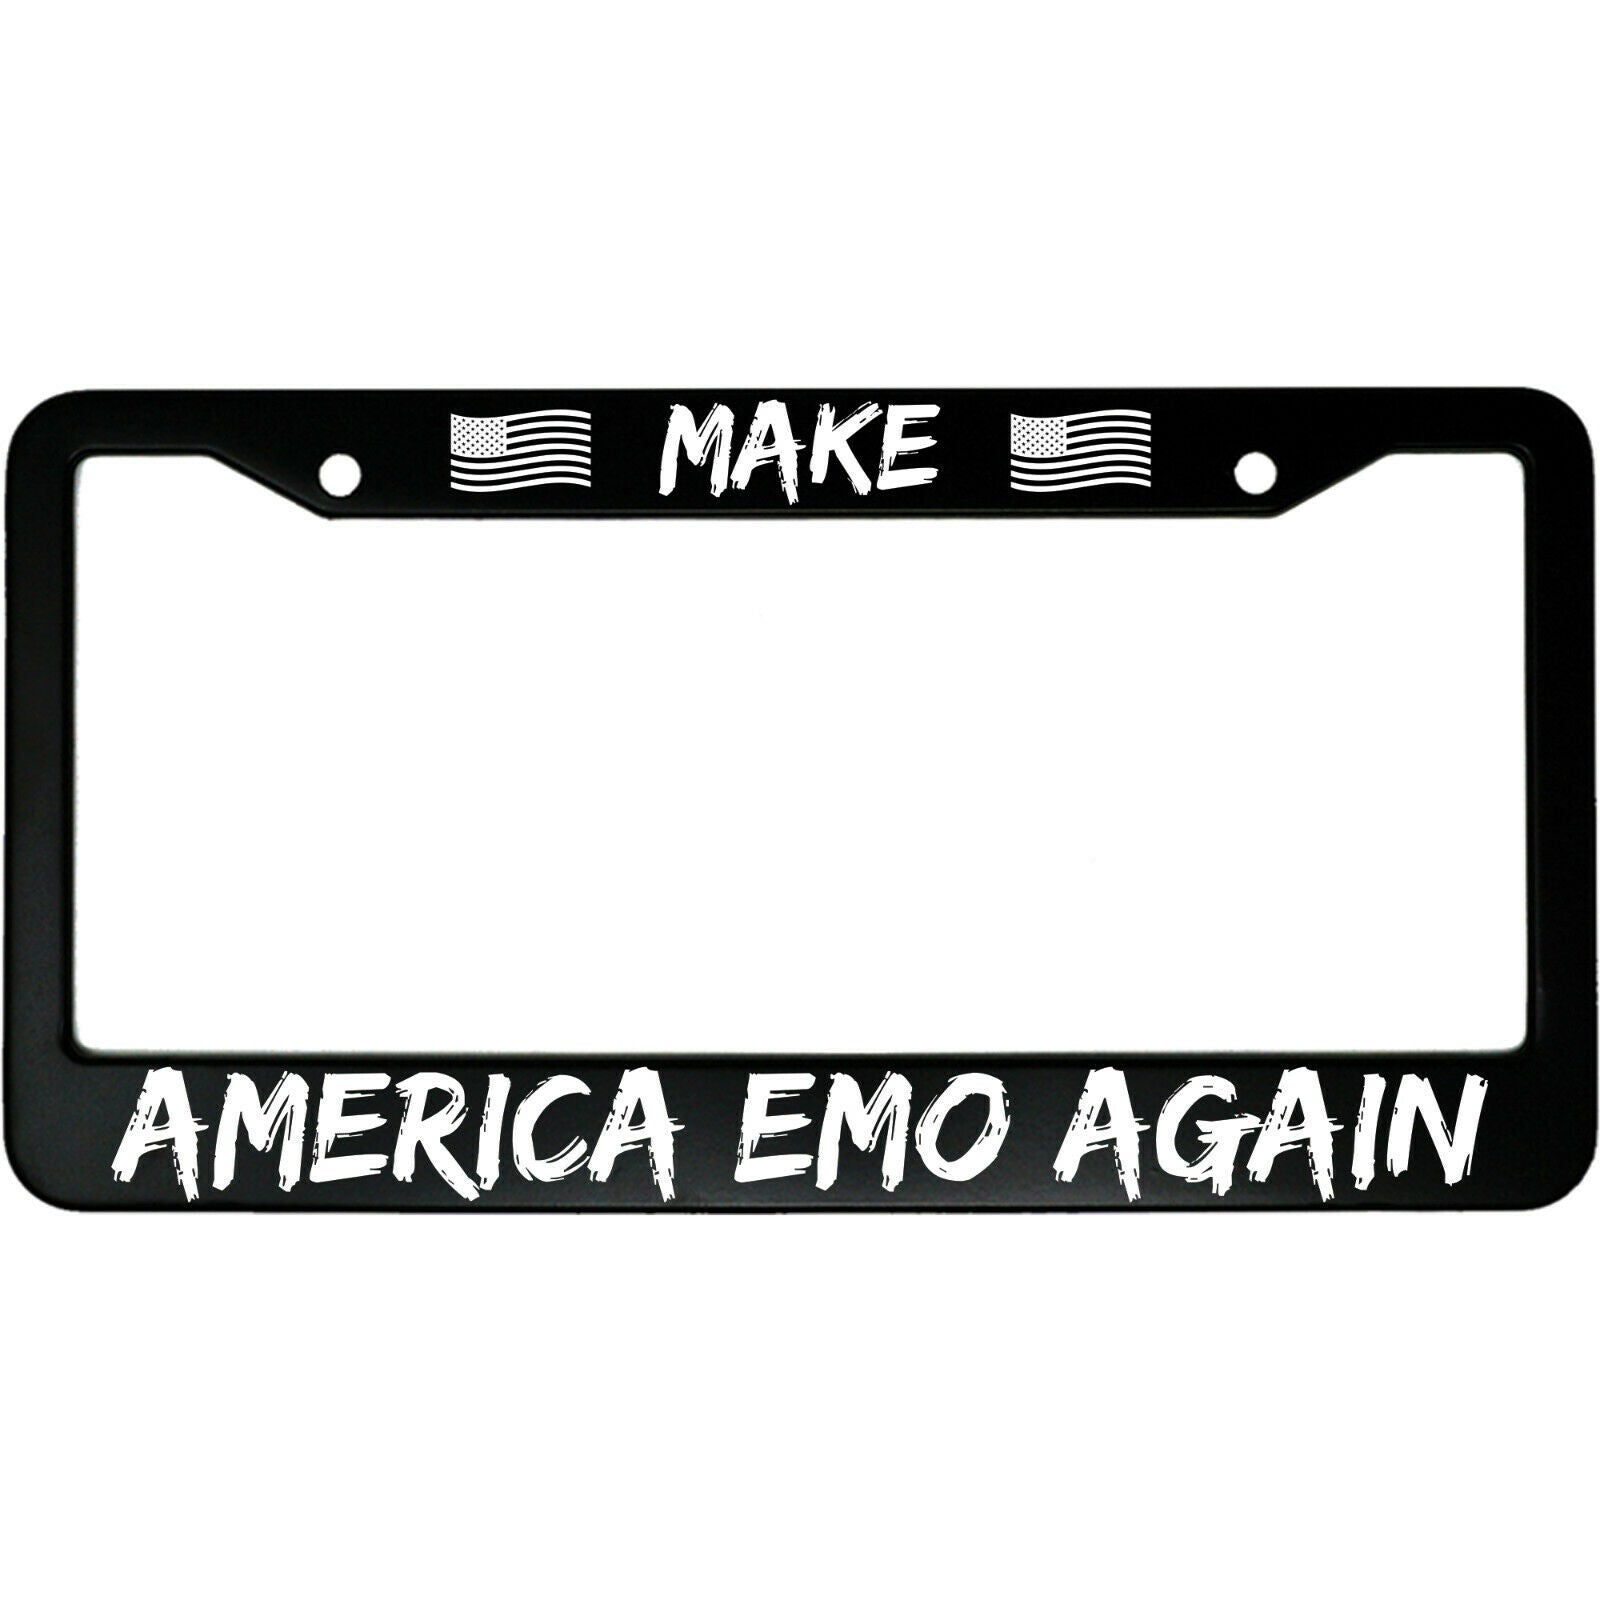 Make America Emo Again